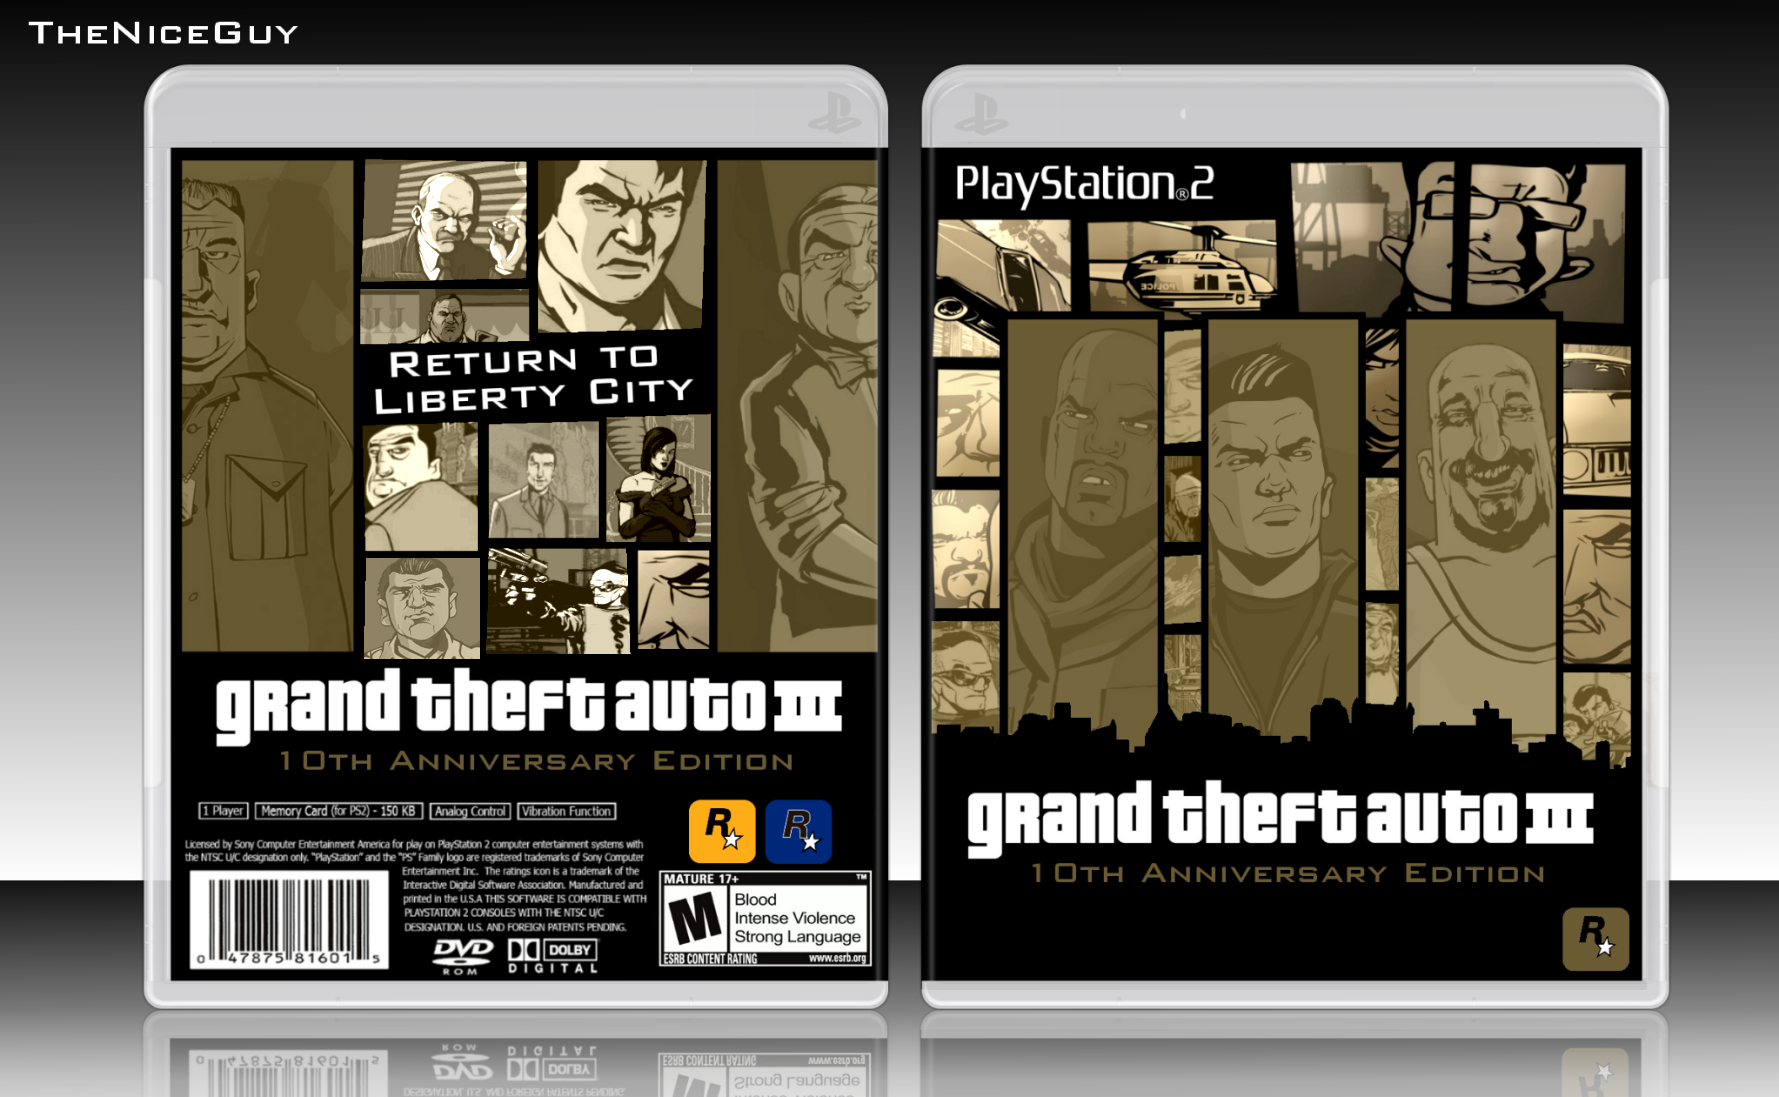 Grand Theft Auto III Anniversary Edition box cover